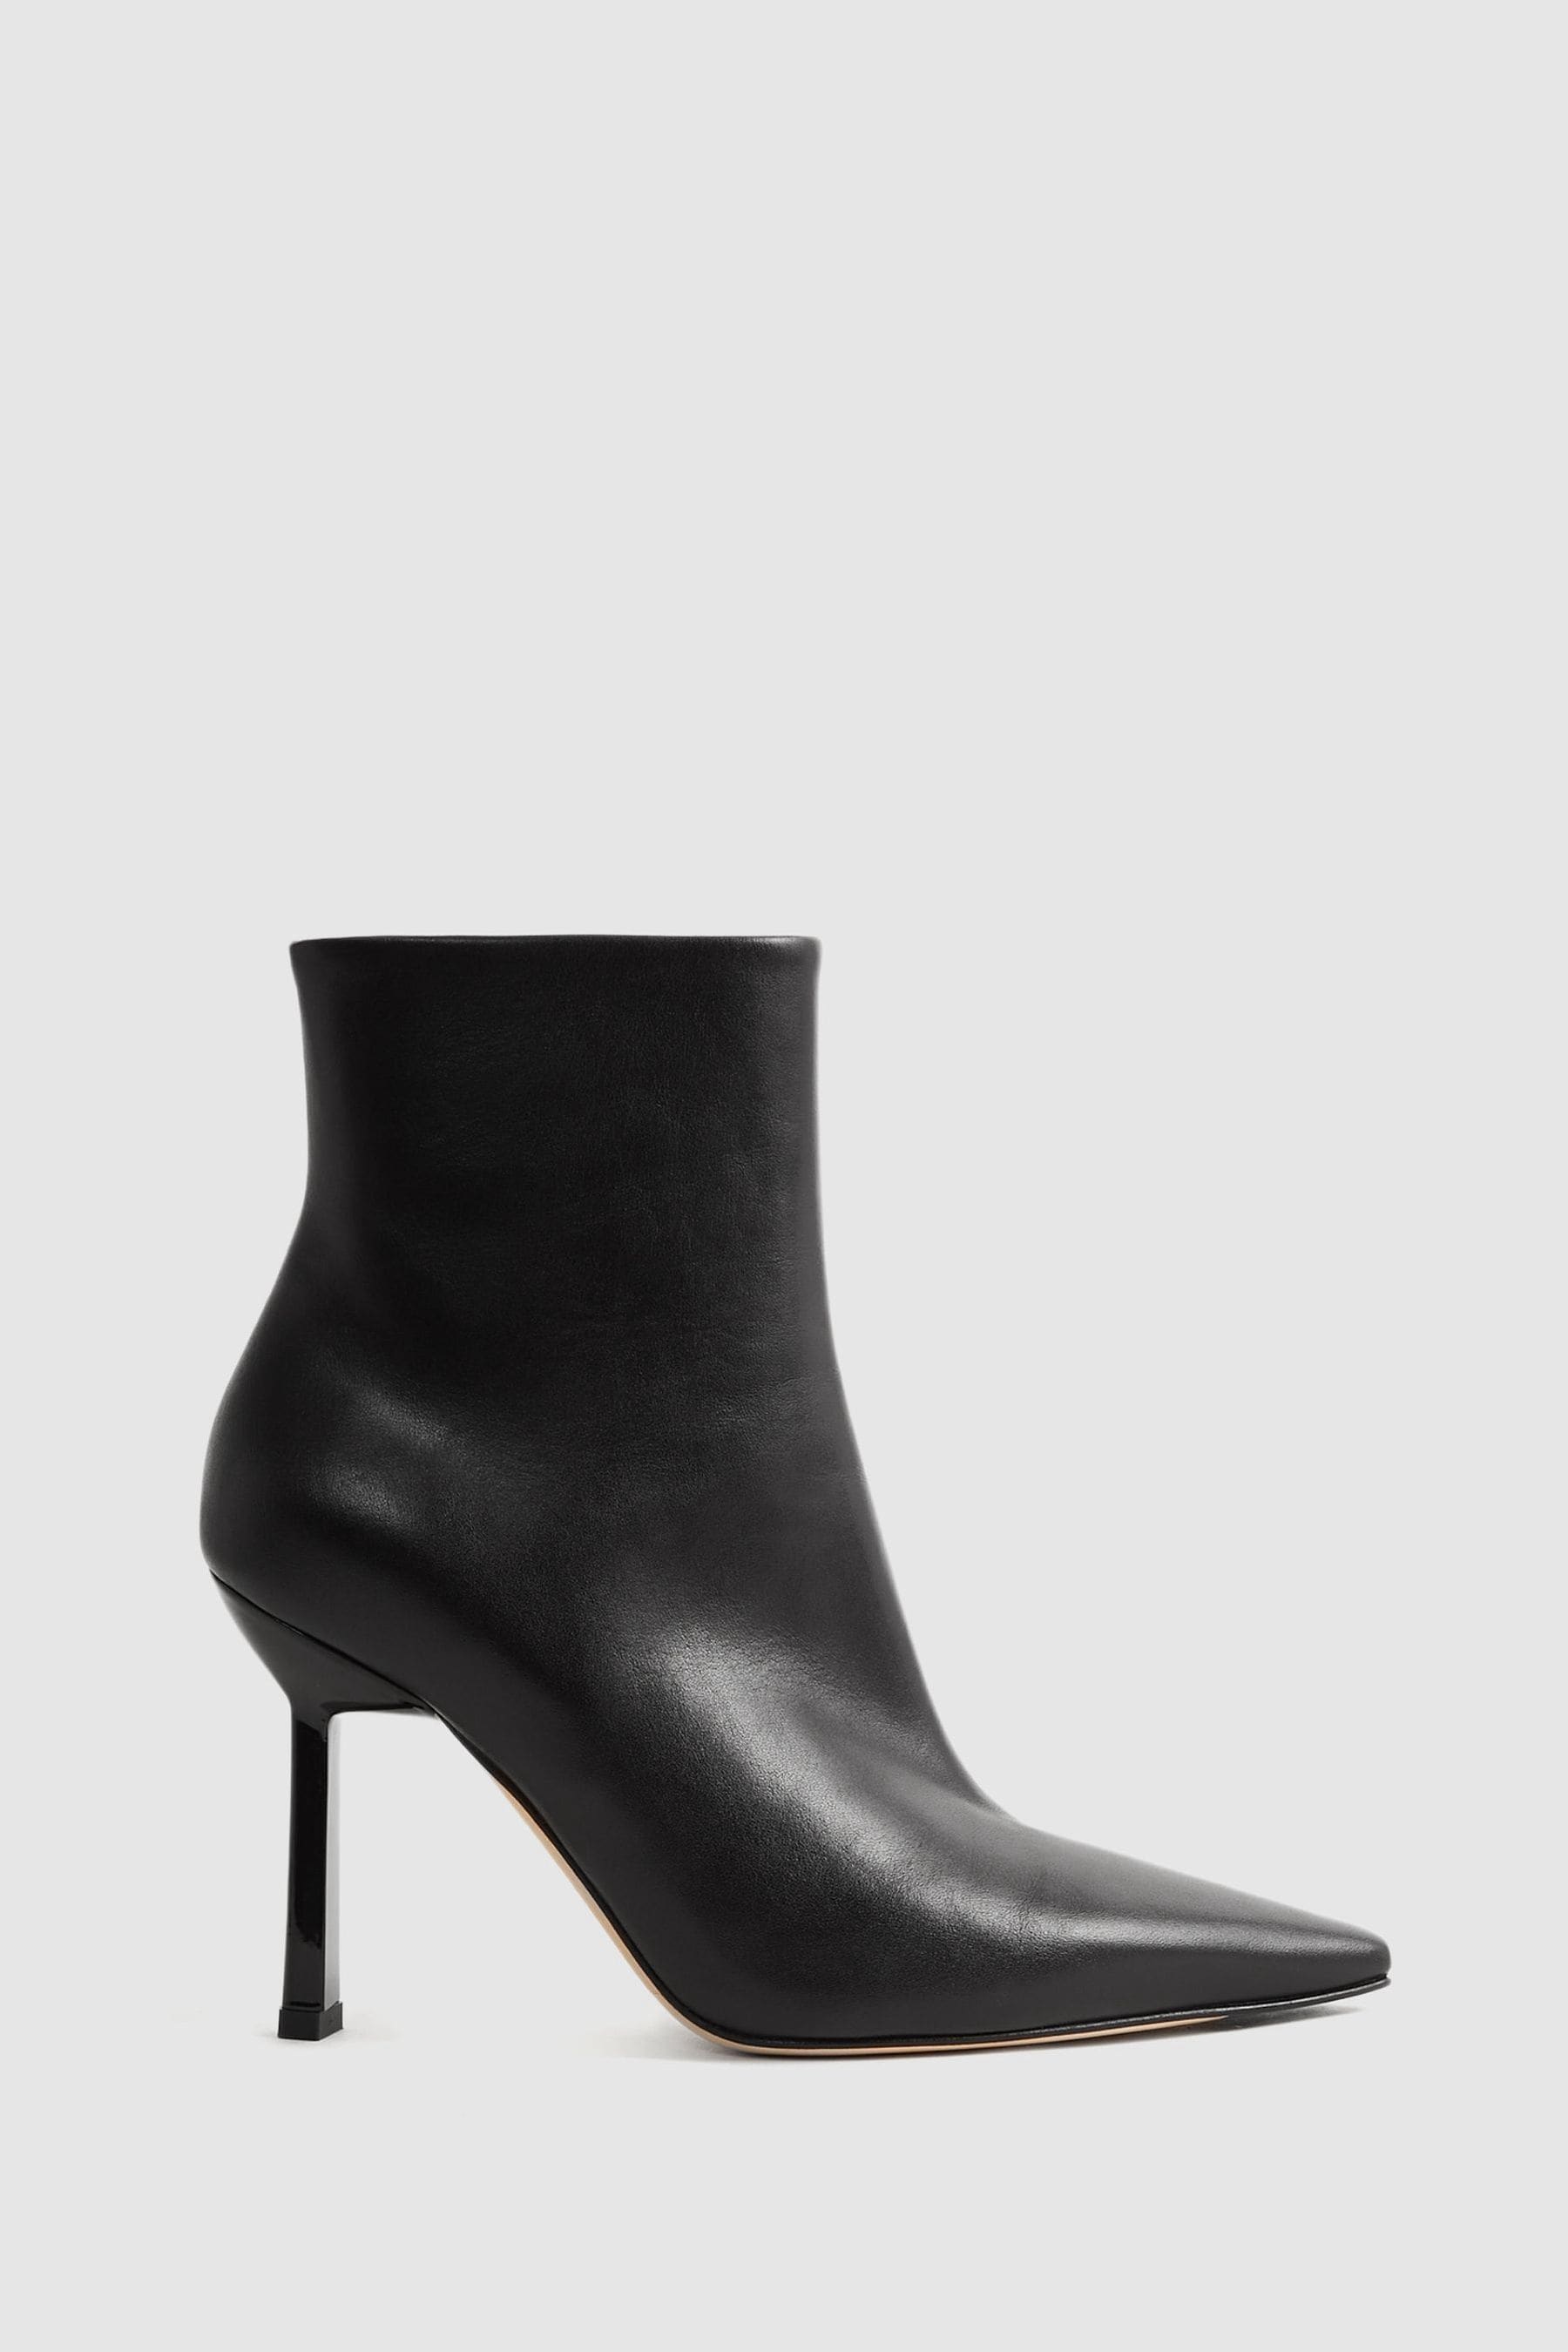 Reiss Scarlett - Black Atelier Italian Leather Heeled Ankle Boots, Uk 8 Eu 41